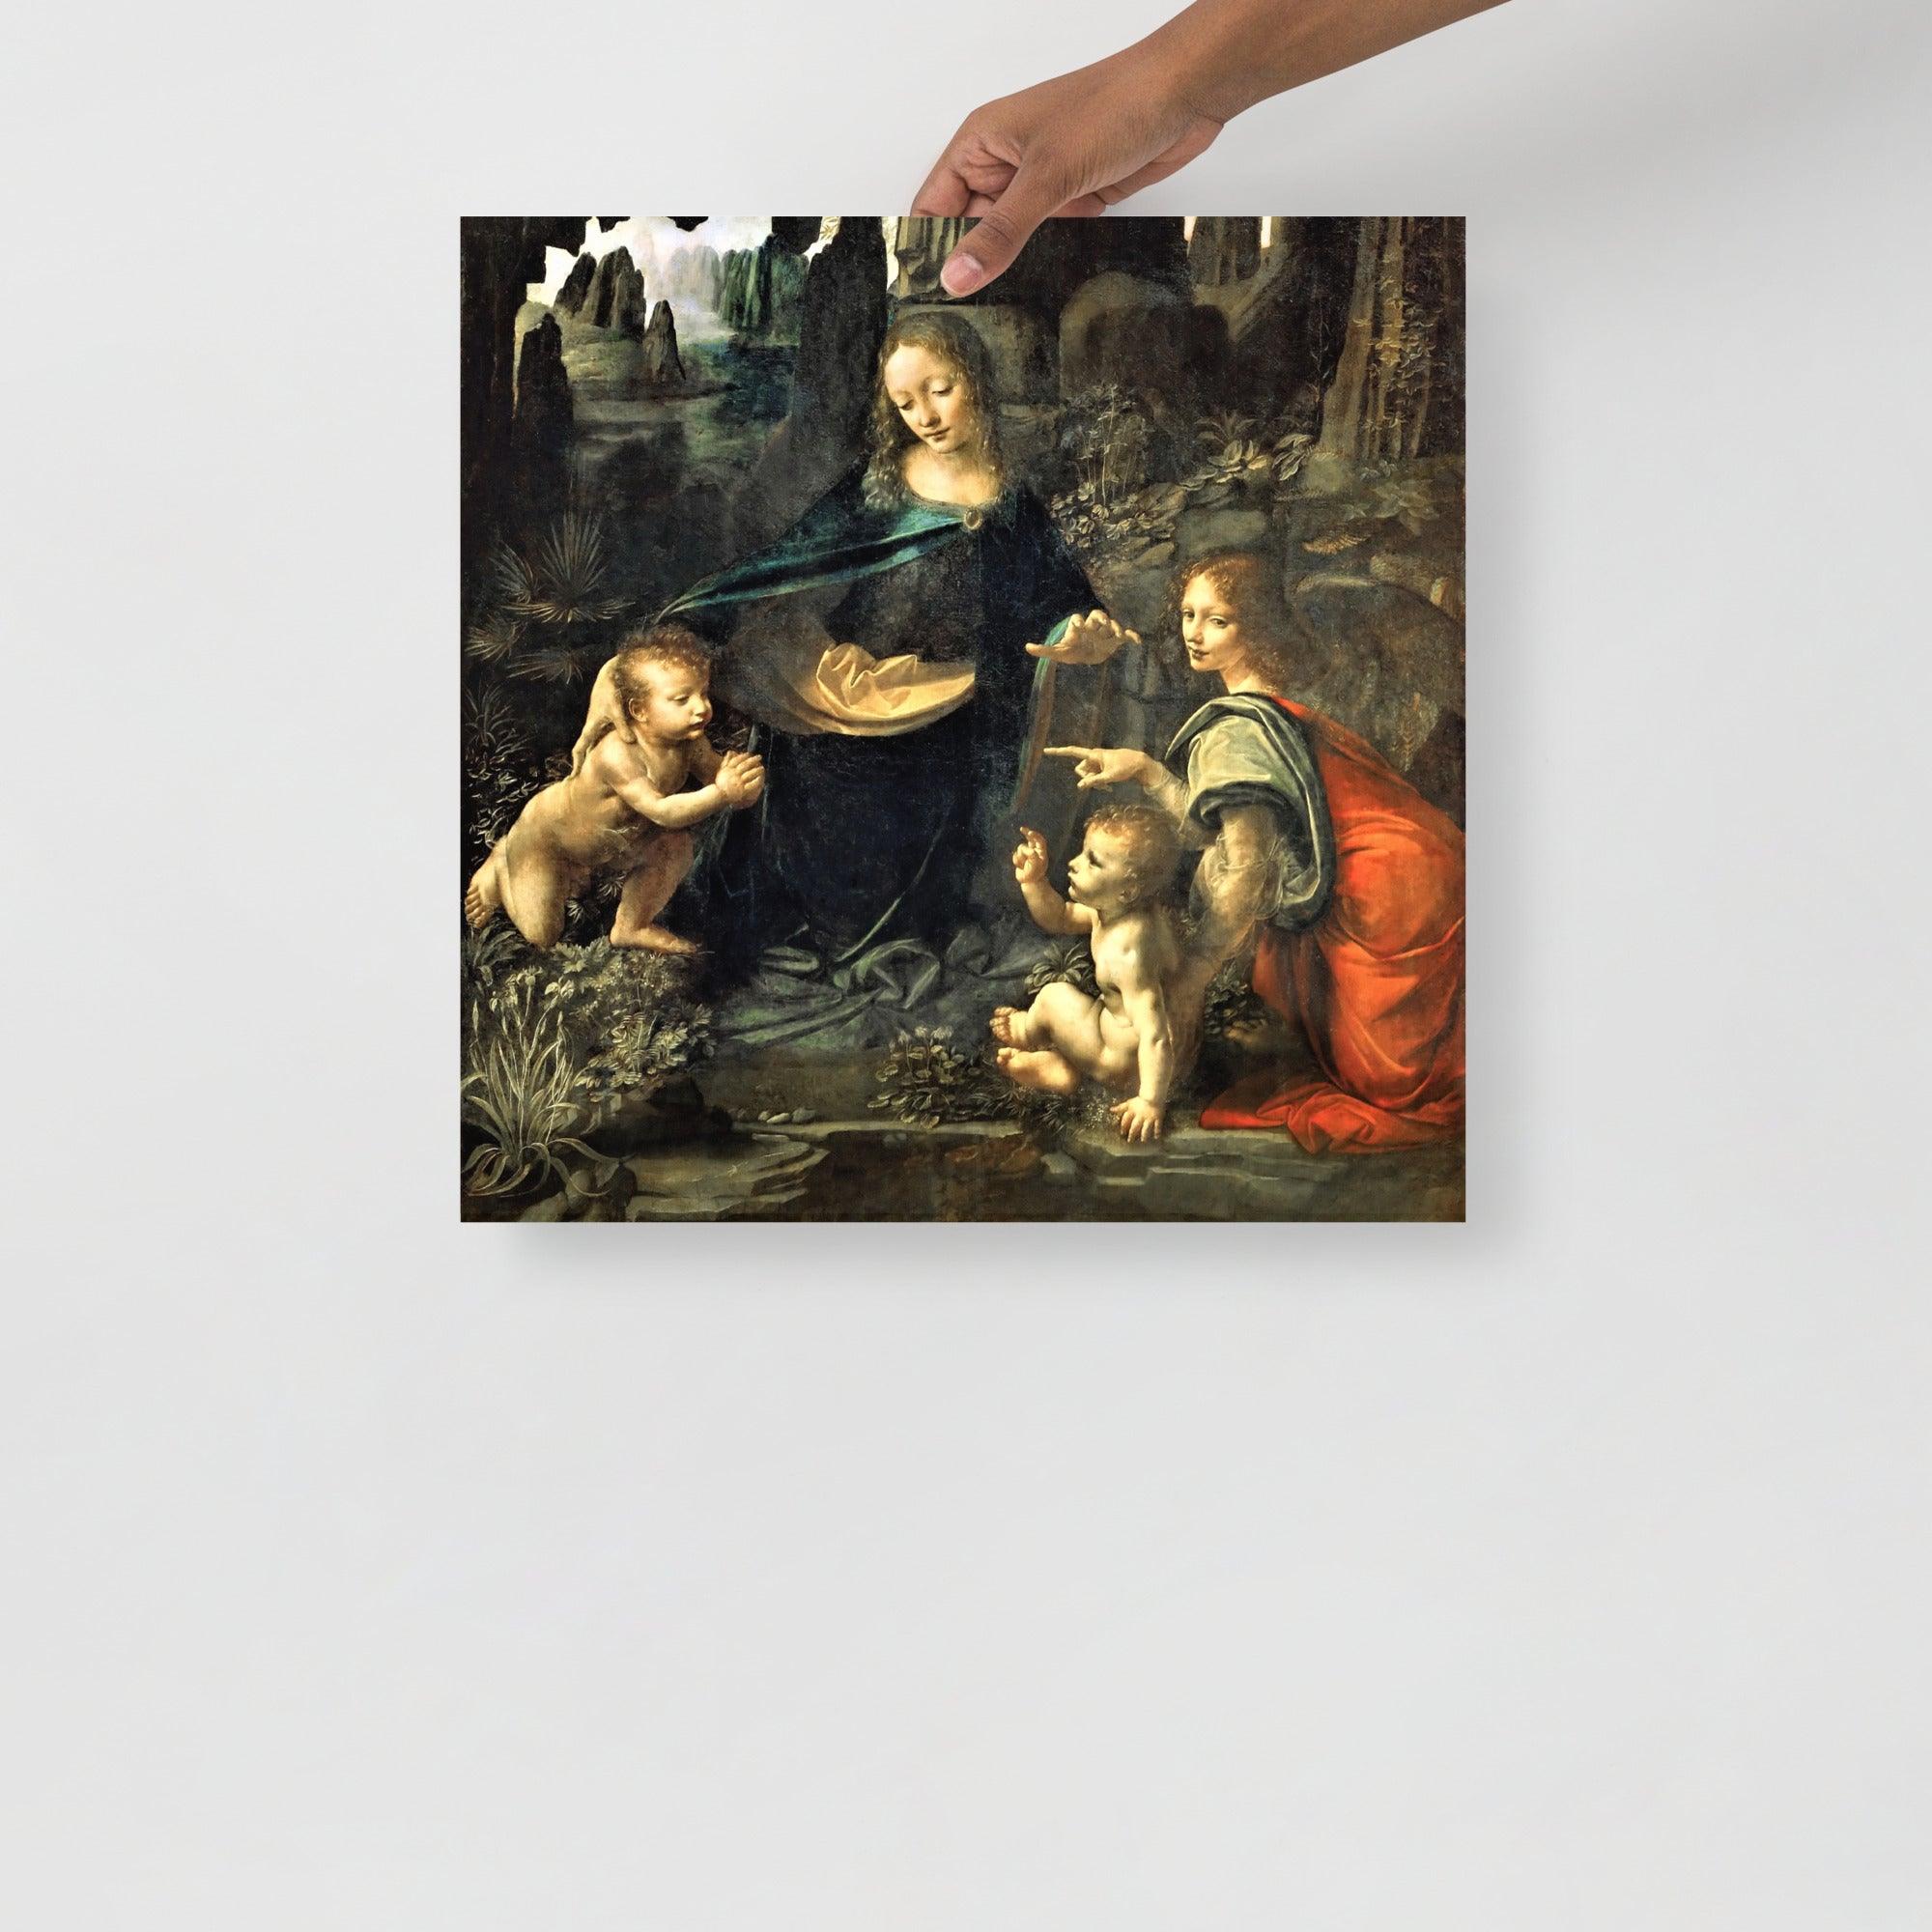 A Virgin of the Rocks by Leonardo Da Vinci  poster on a plain backdrop in size 18x18”.